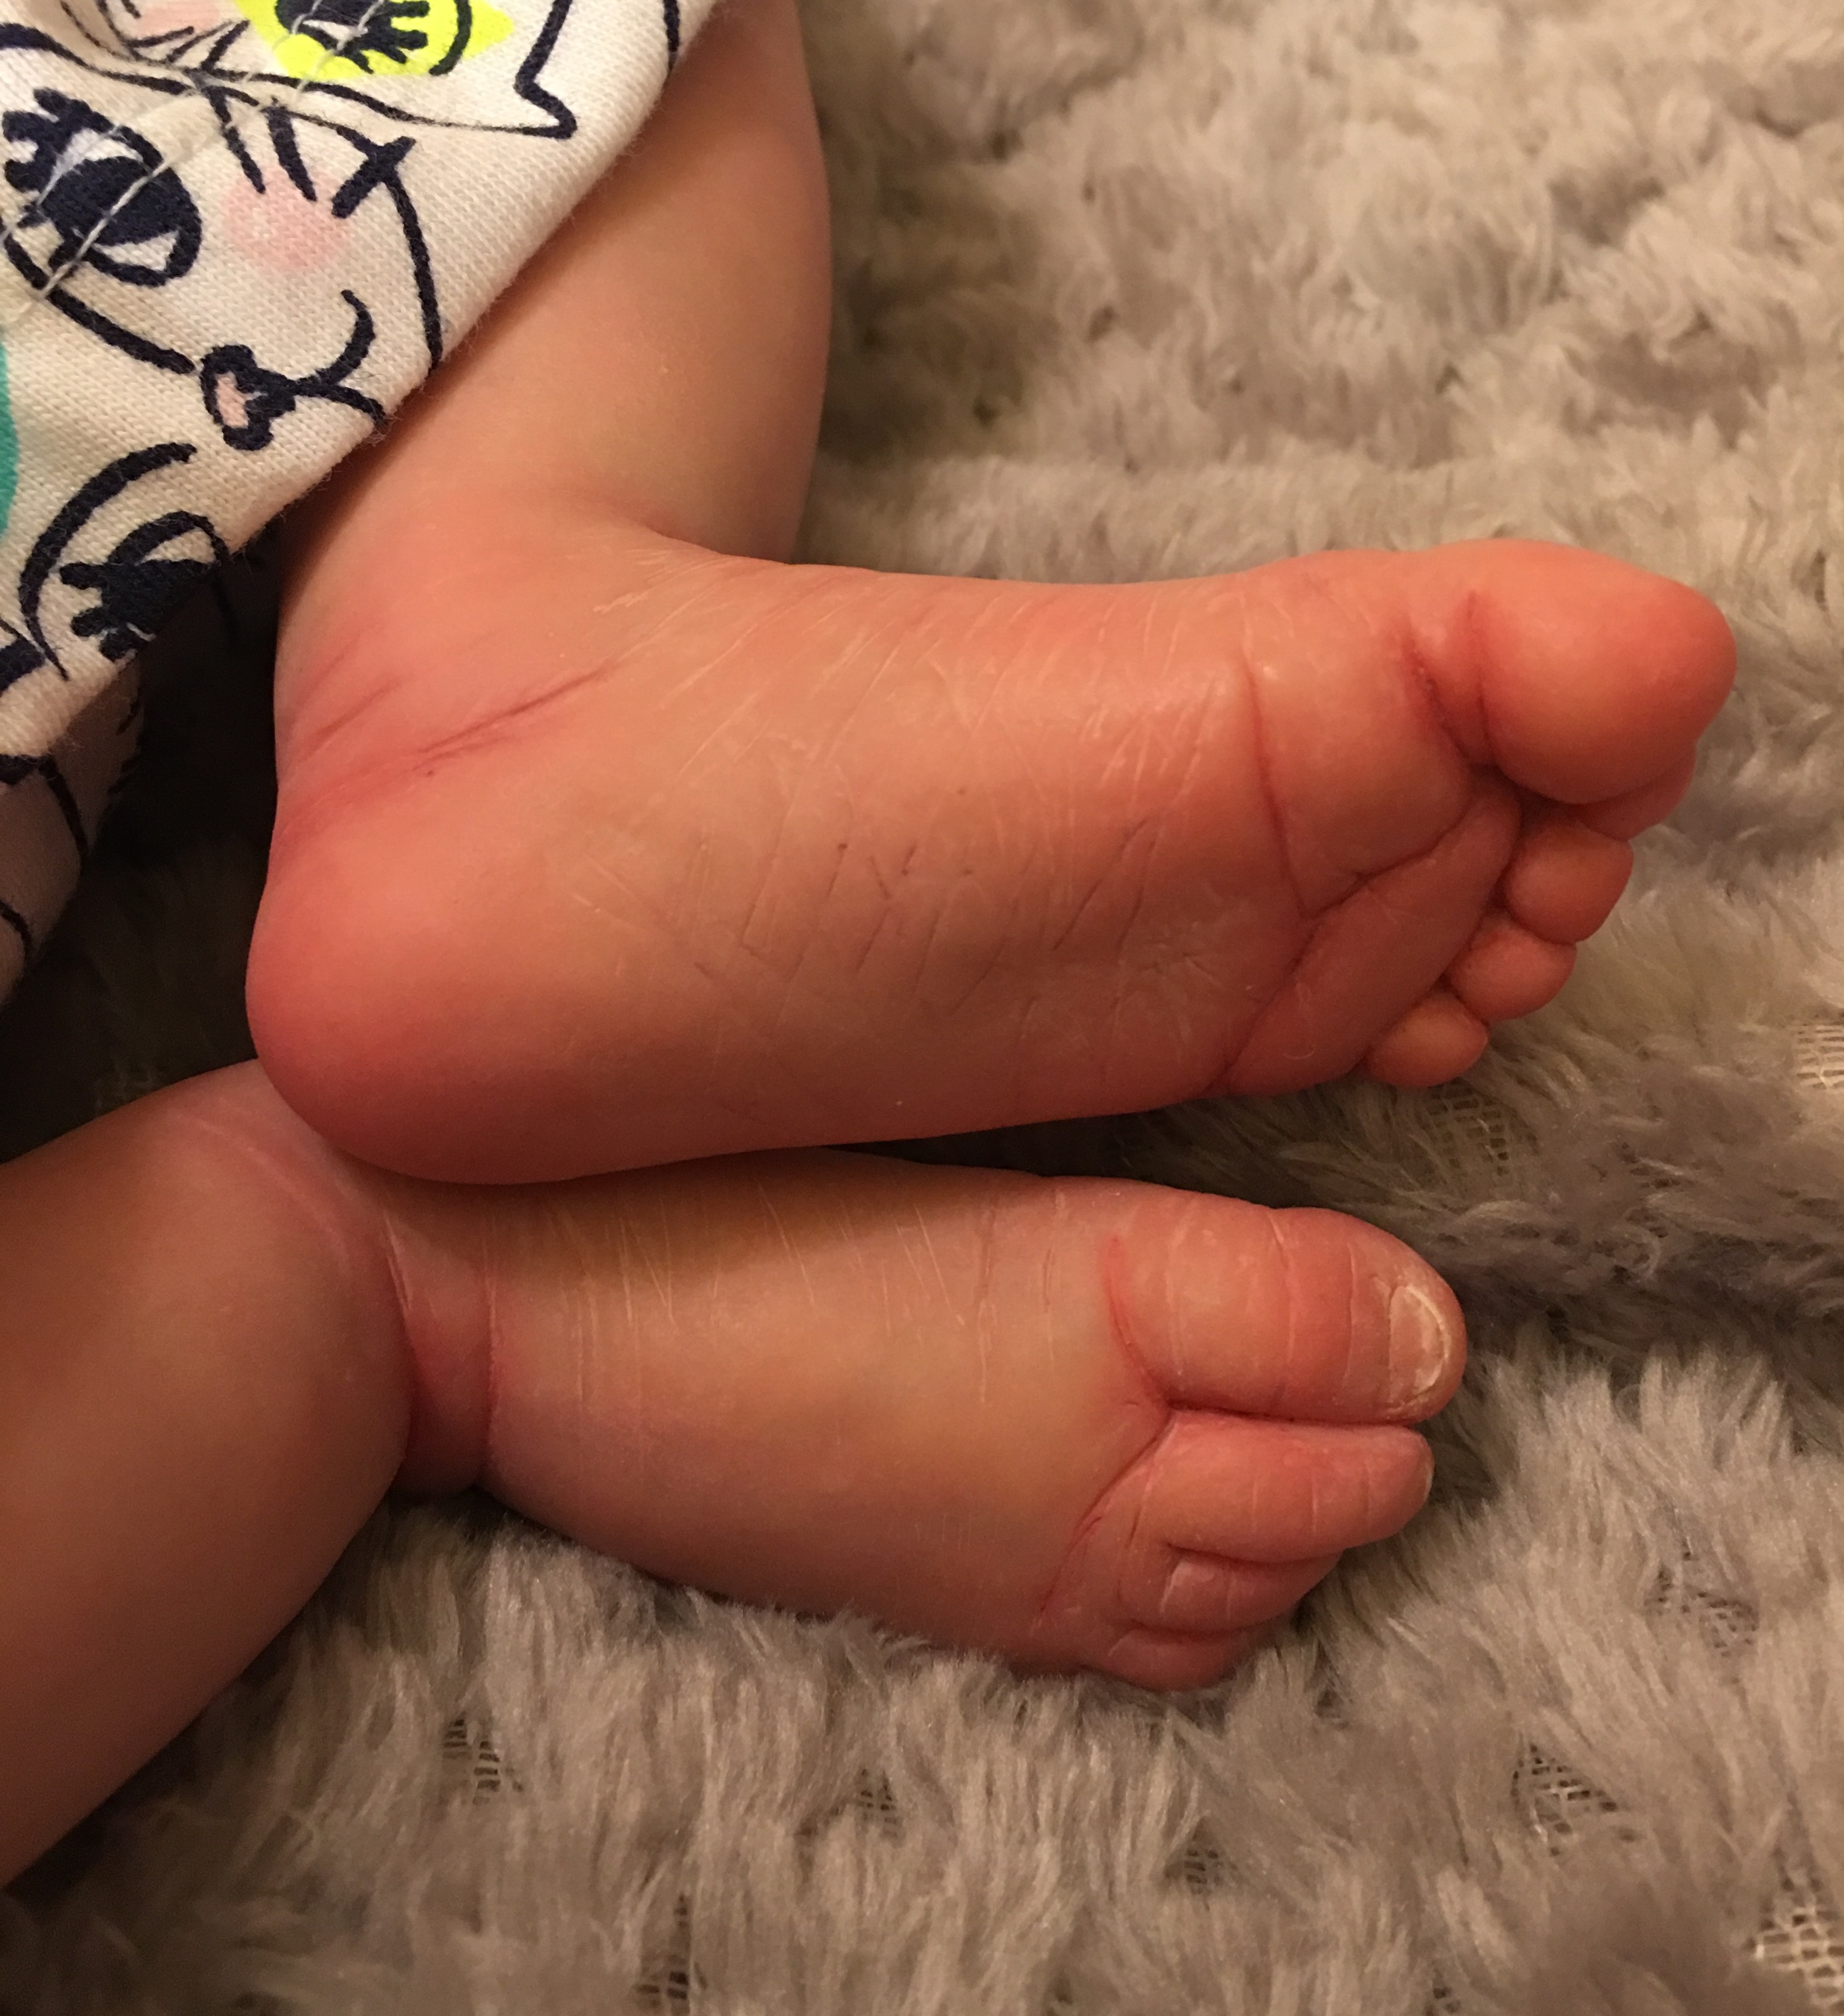 Scarlett's feet